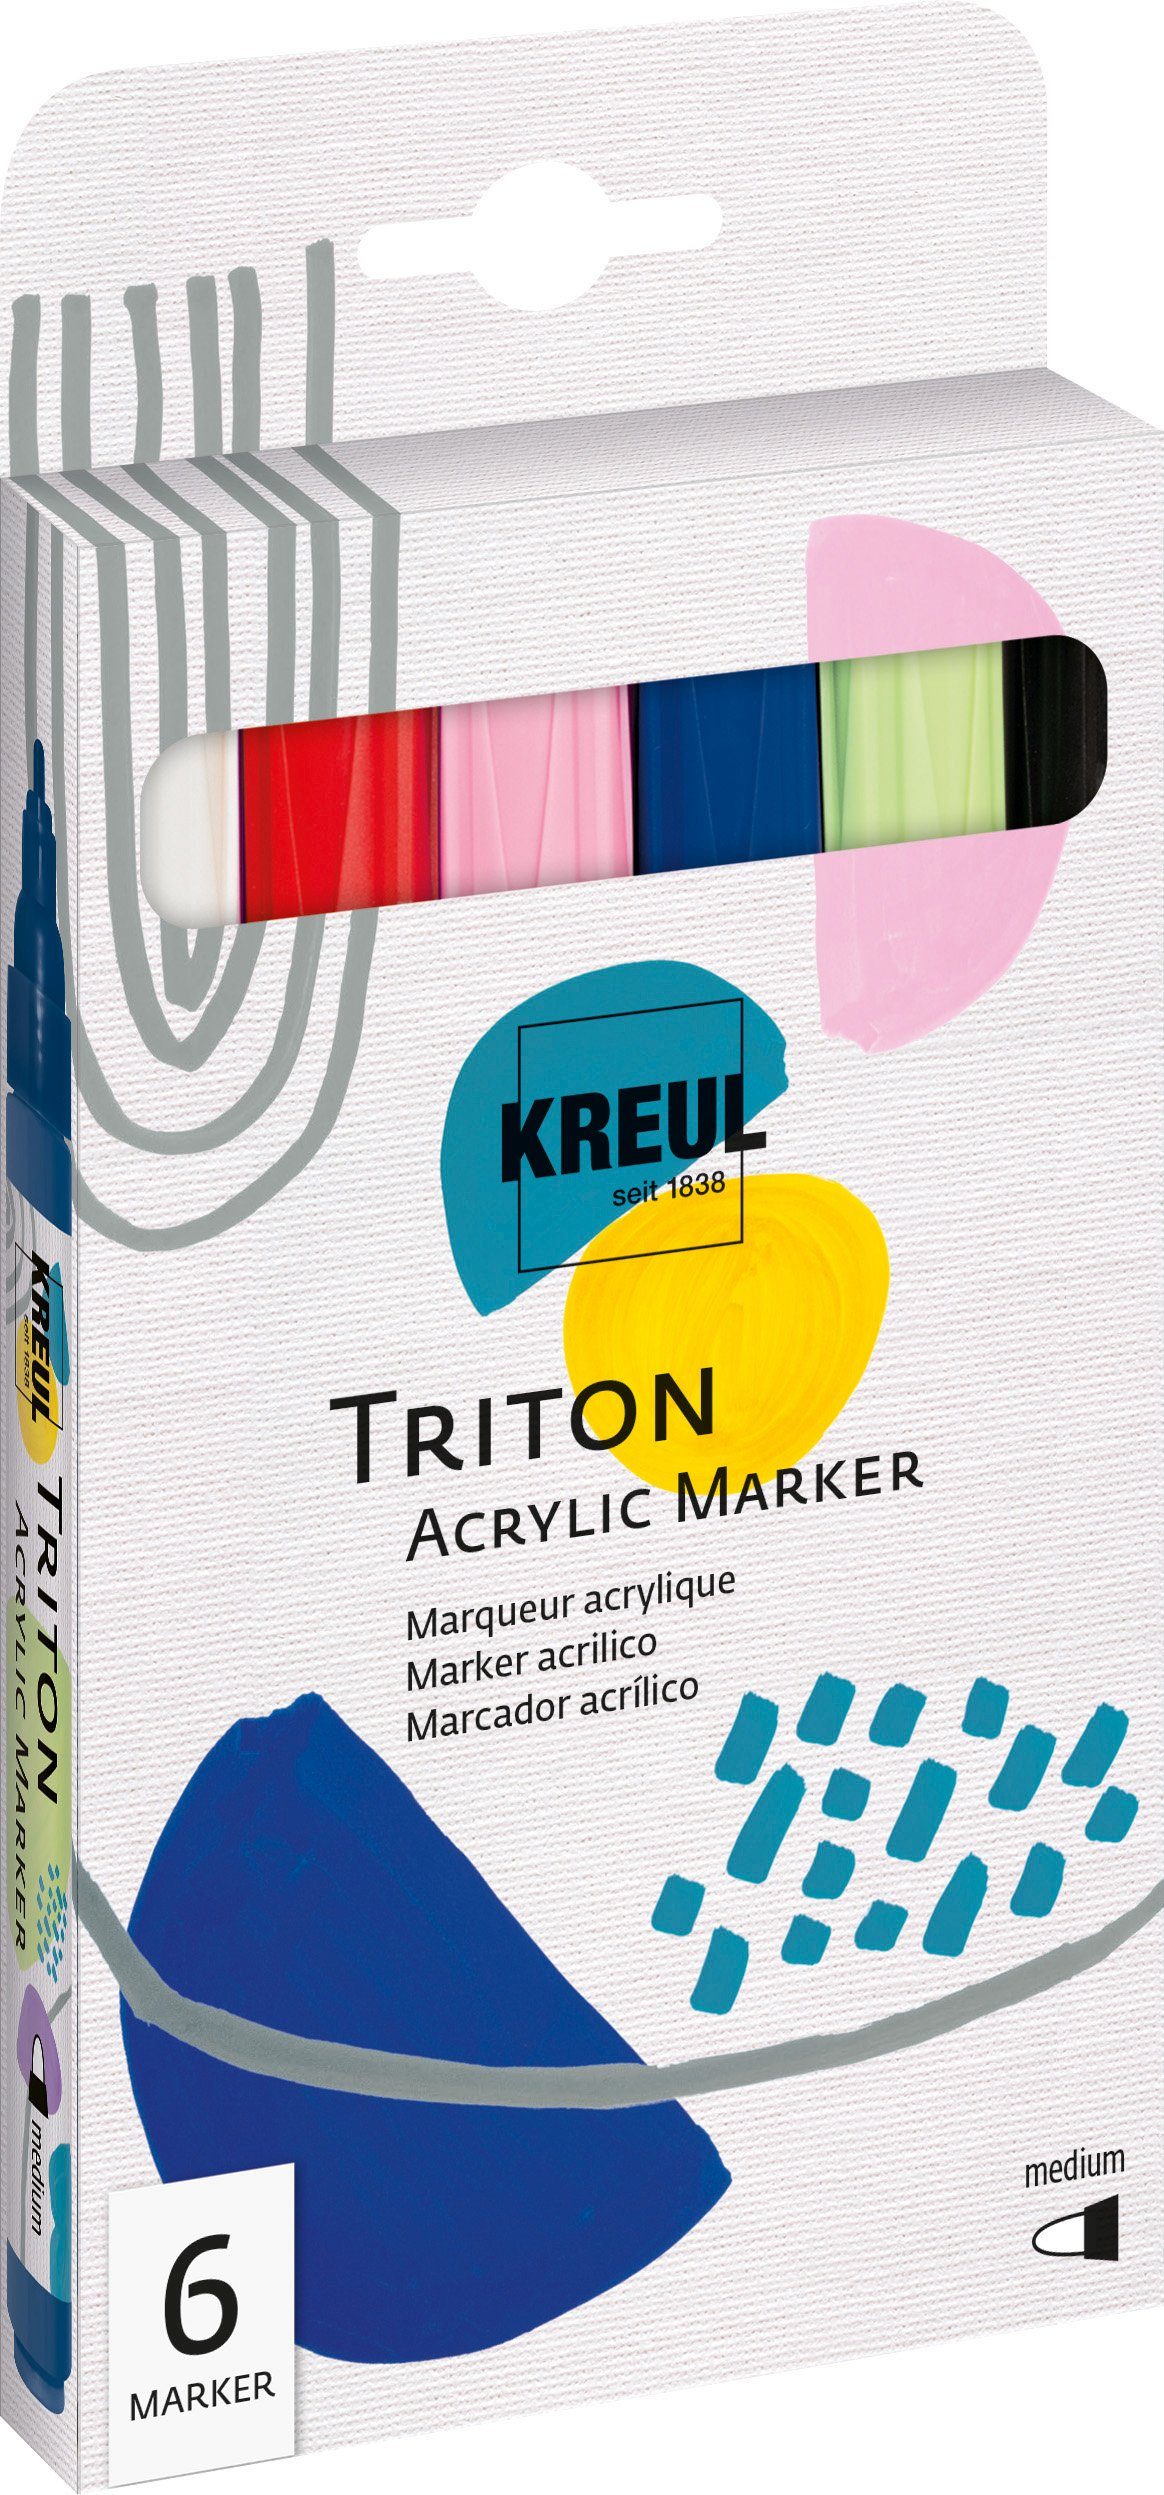 Kreul Marker Triton Medium Acrylic Marker